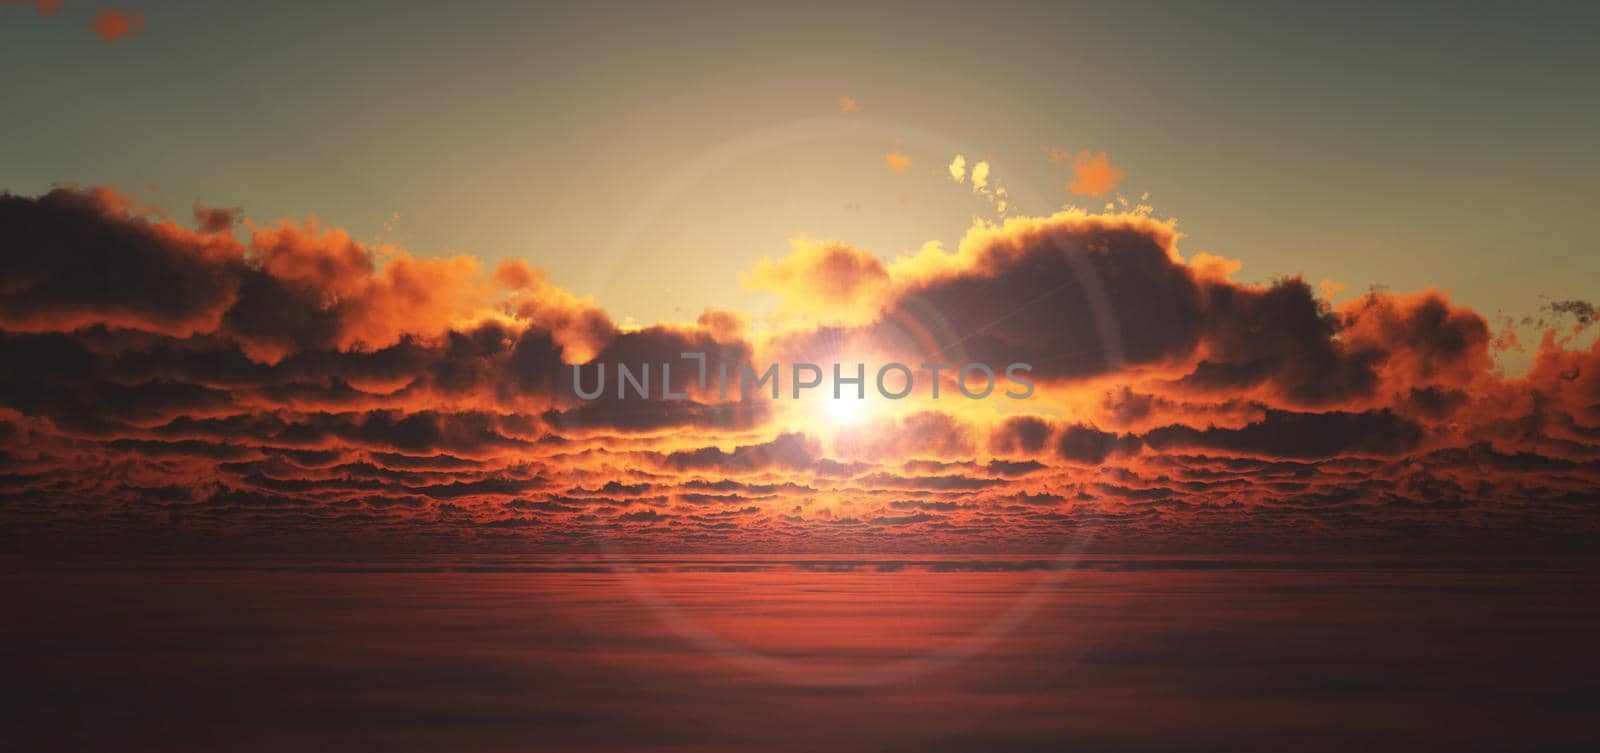 fly above clouds sunset 3d render illustration